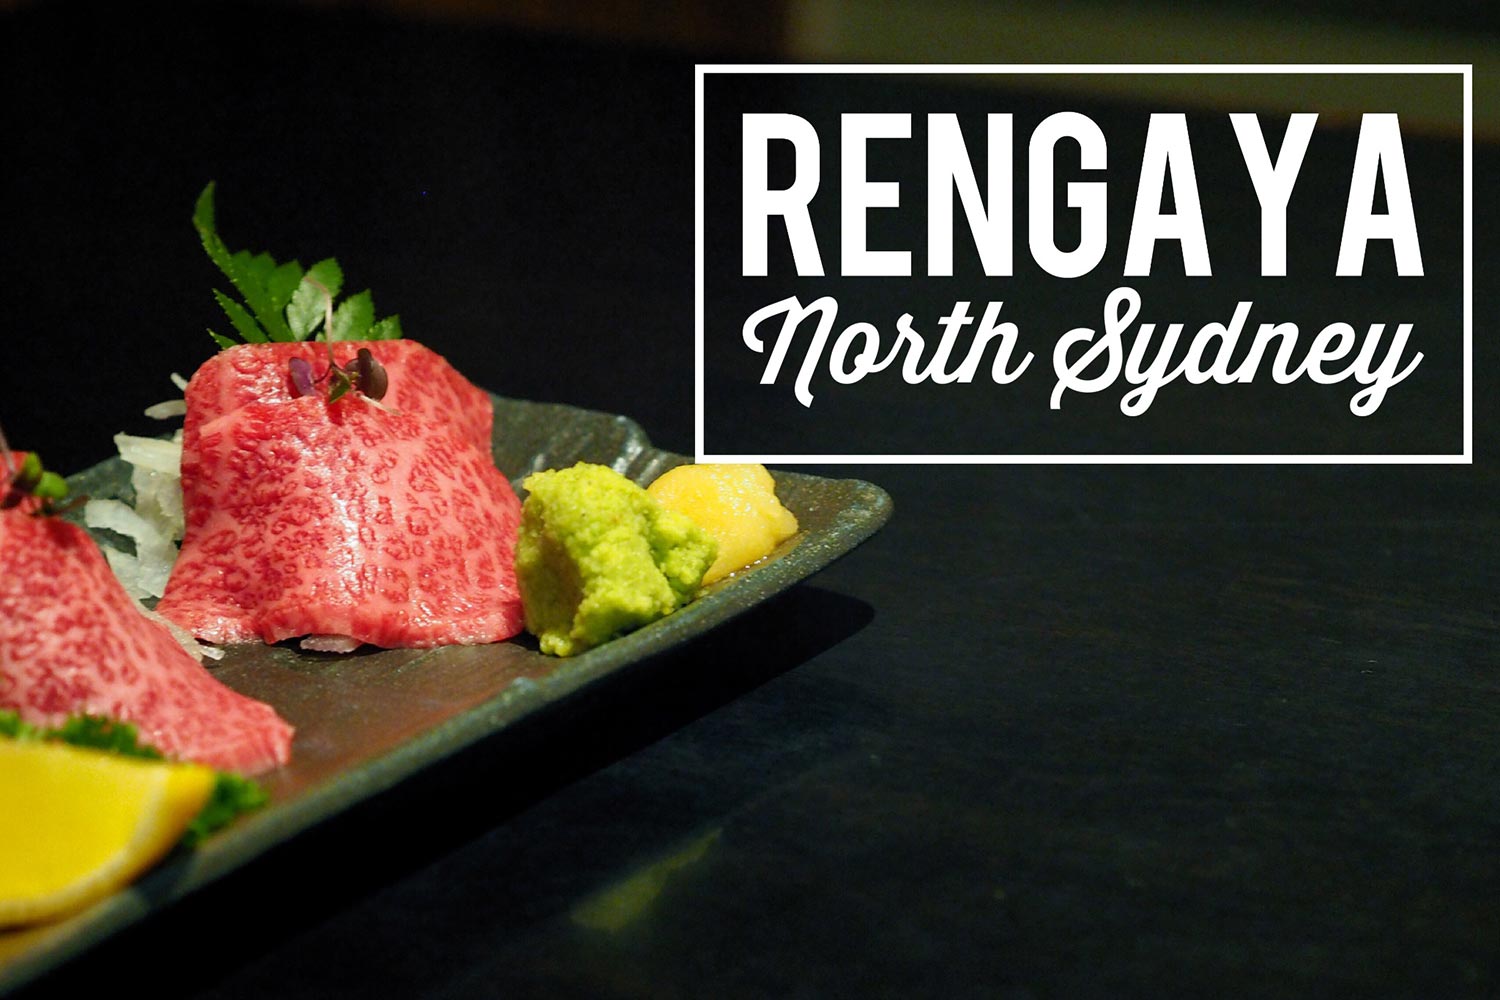 Sydney Food Blog Review of Rengaya, North Sydney